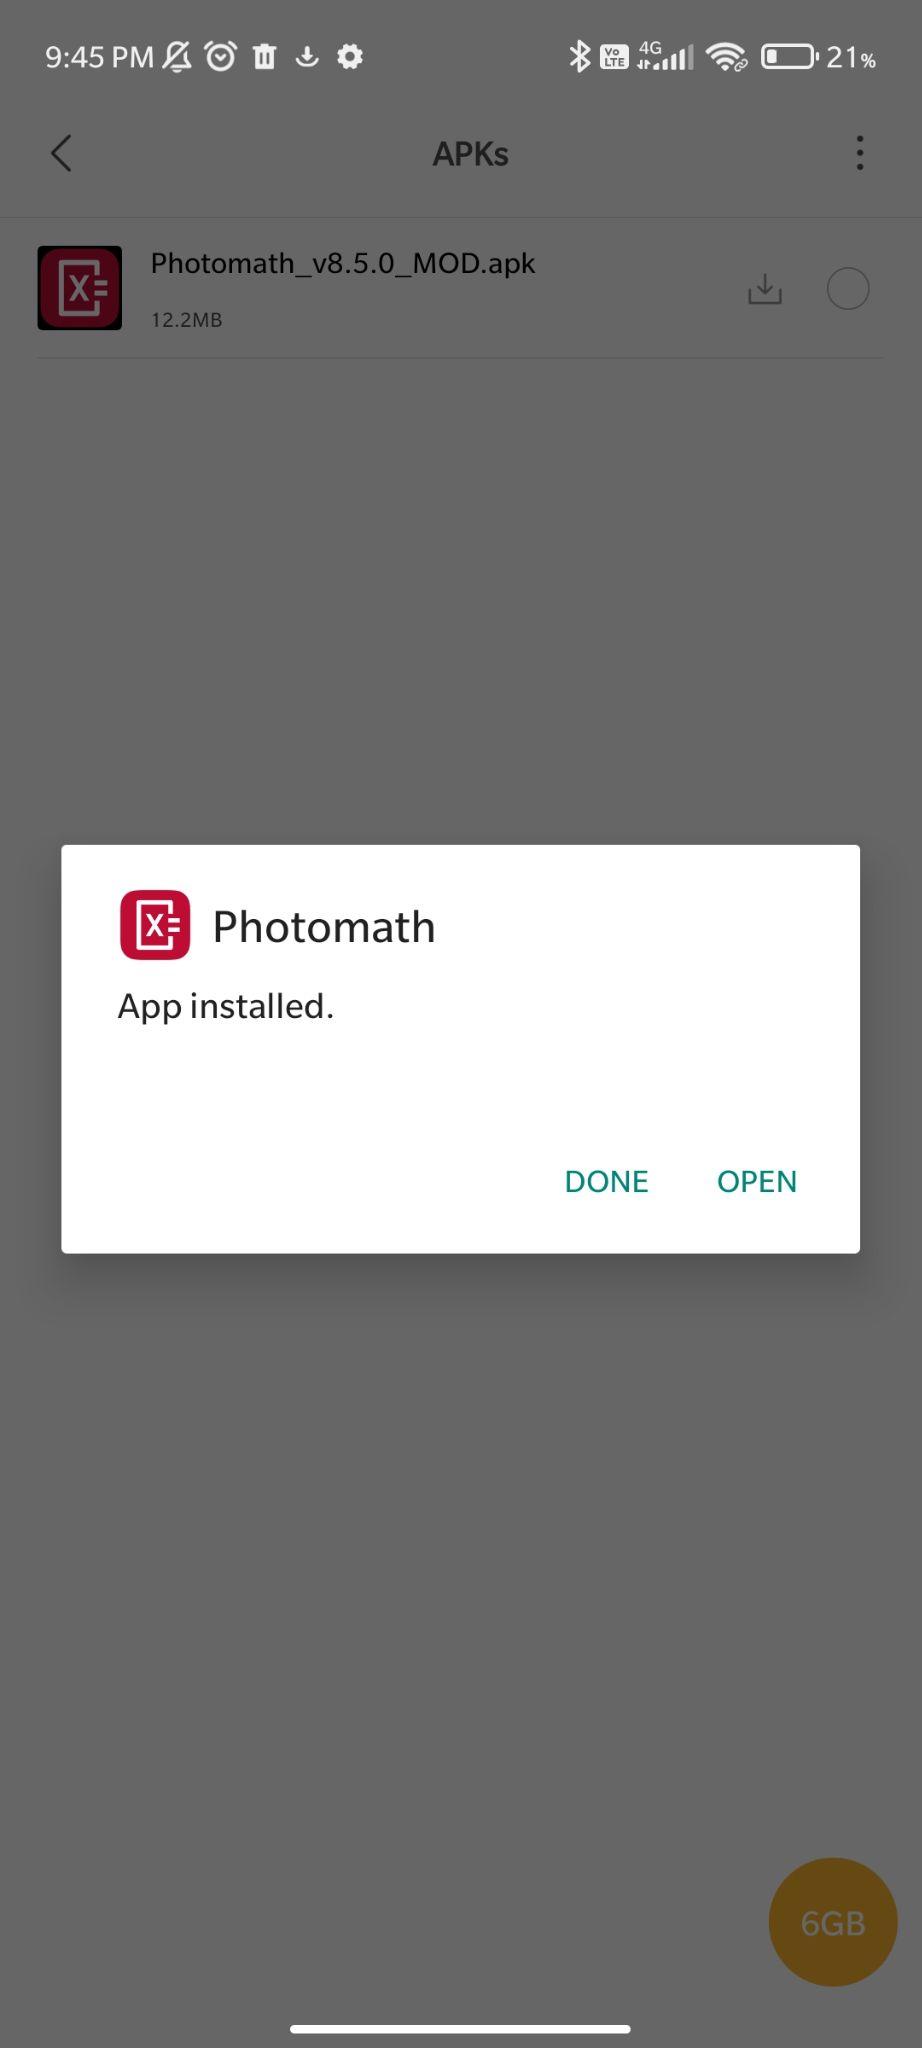 photomath mod apk installed